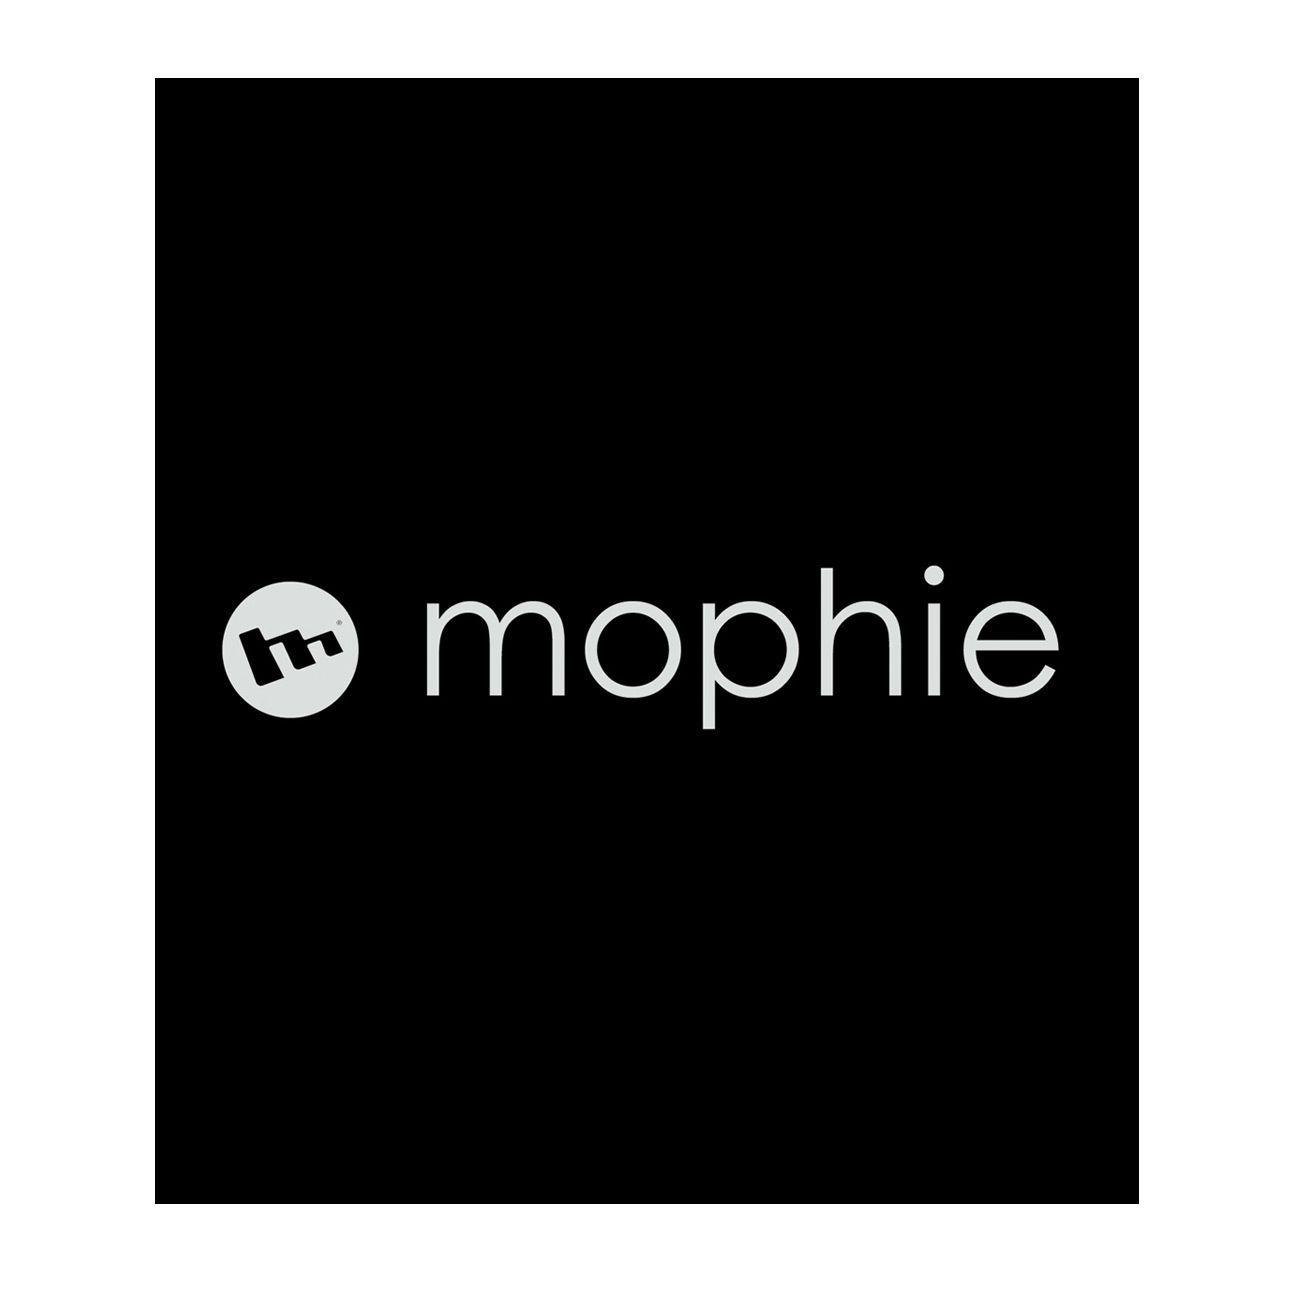 mophie logo